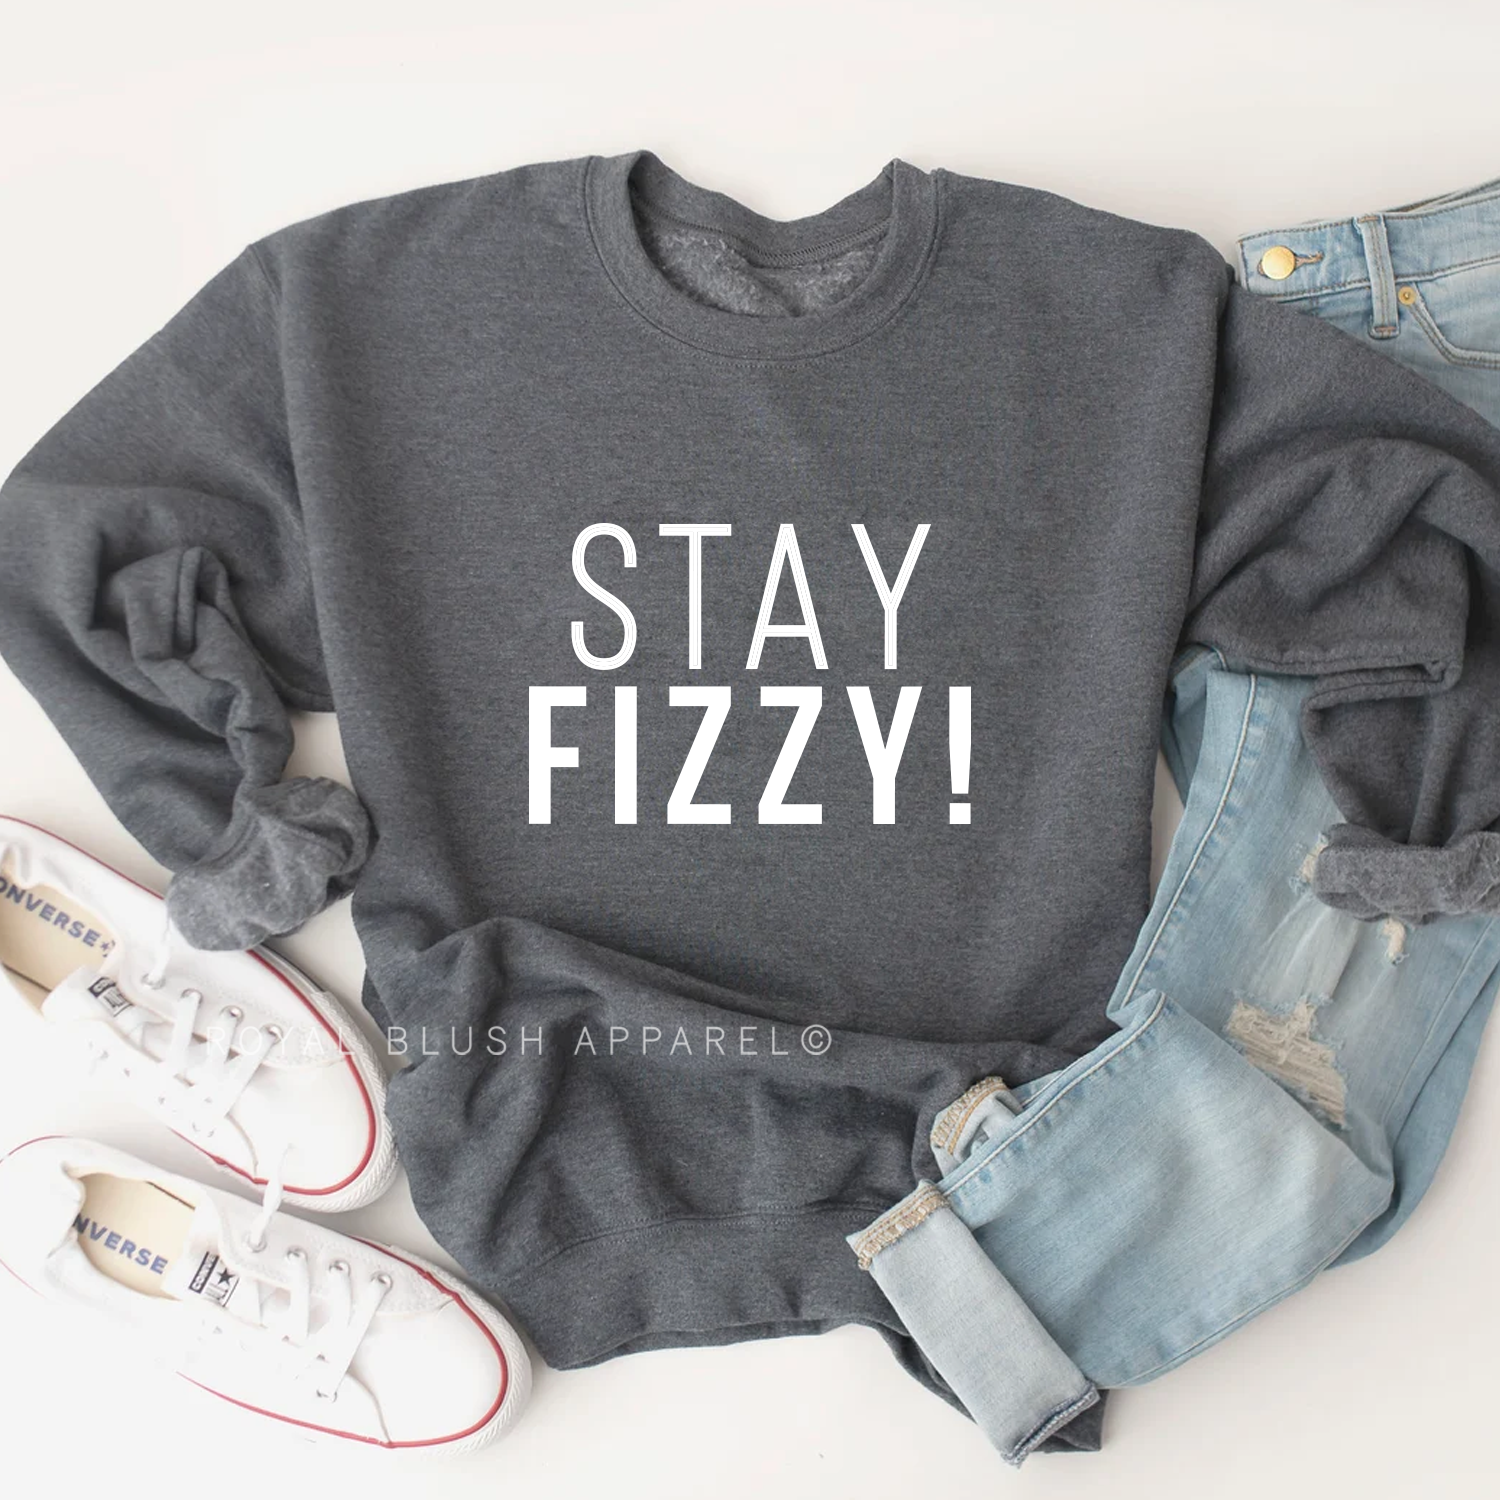 Stay Fizzy! Sweatshirt